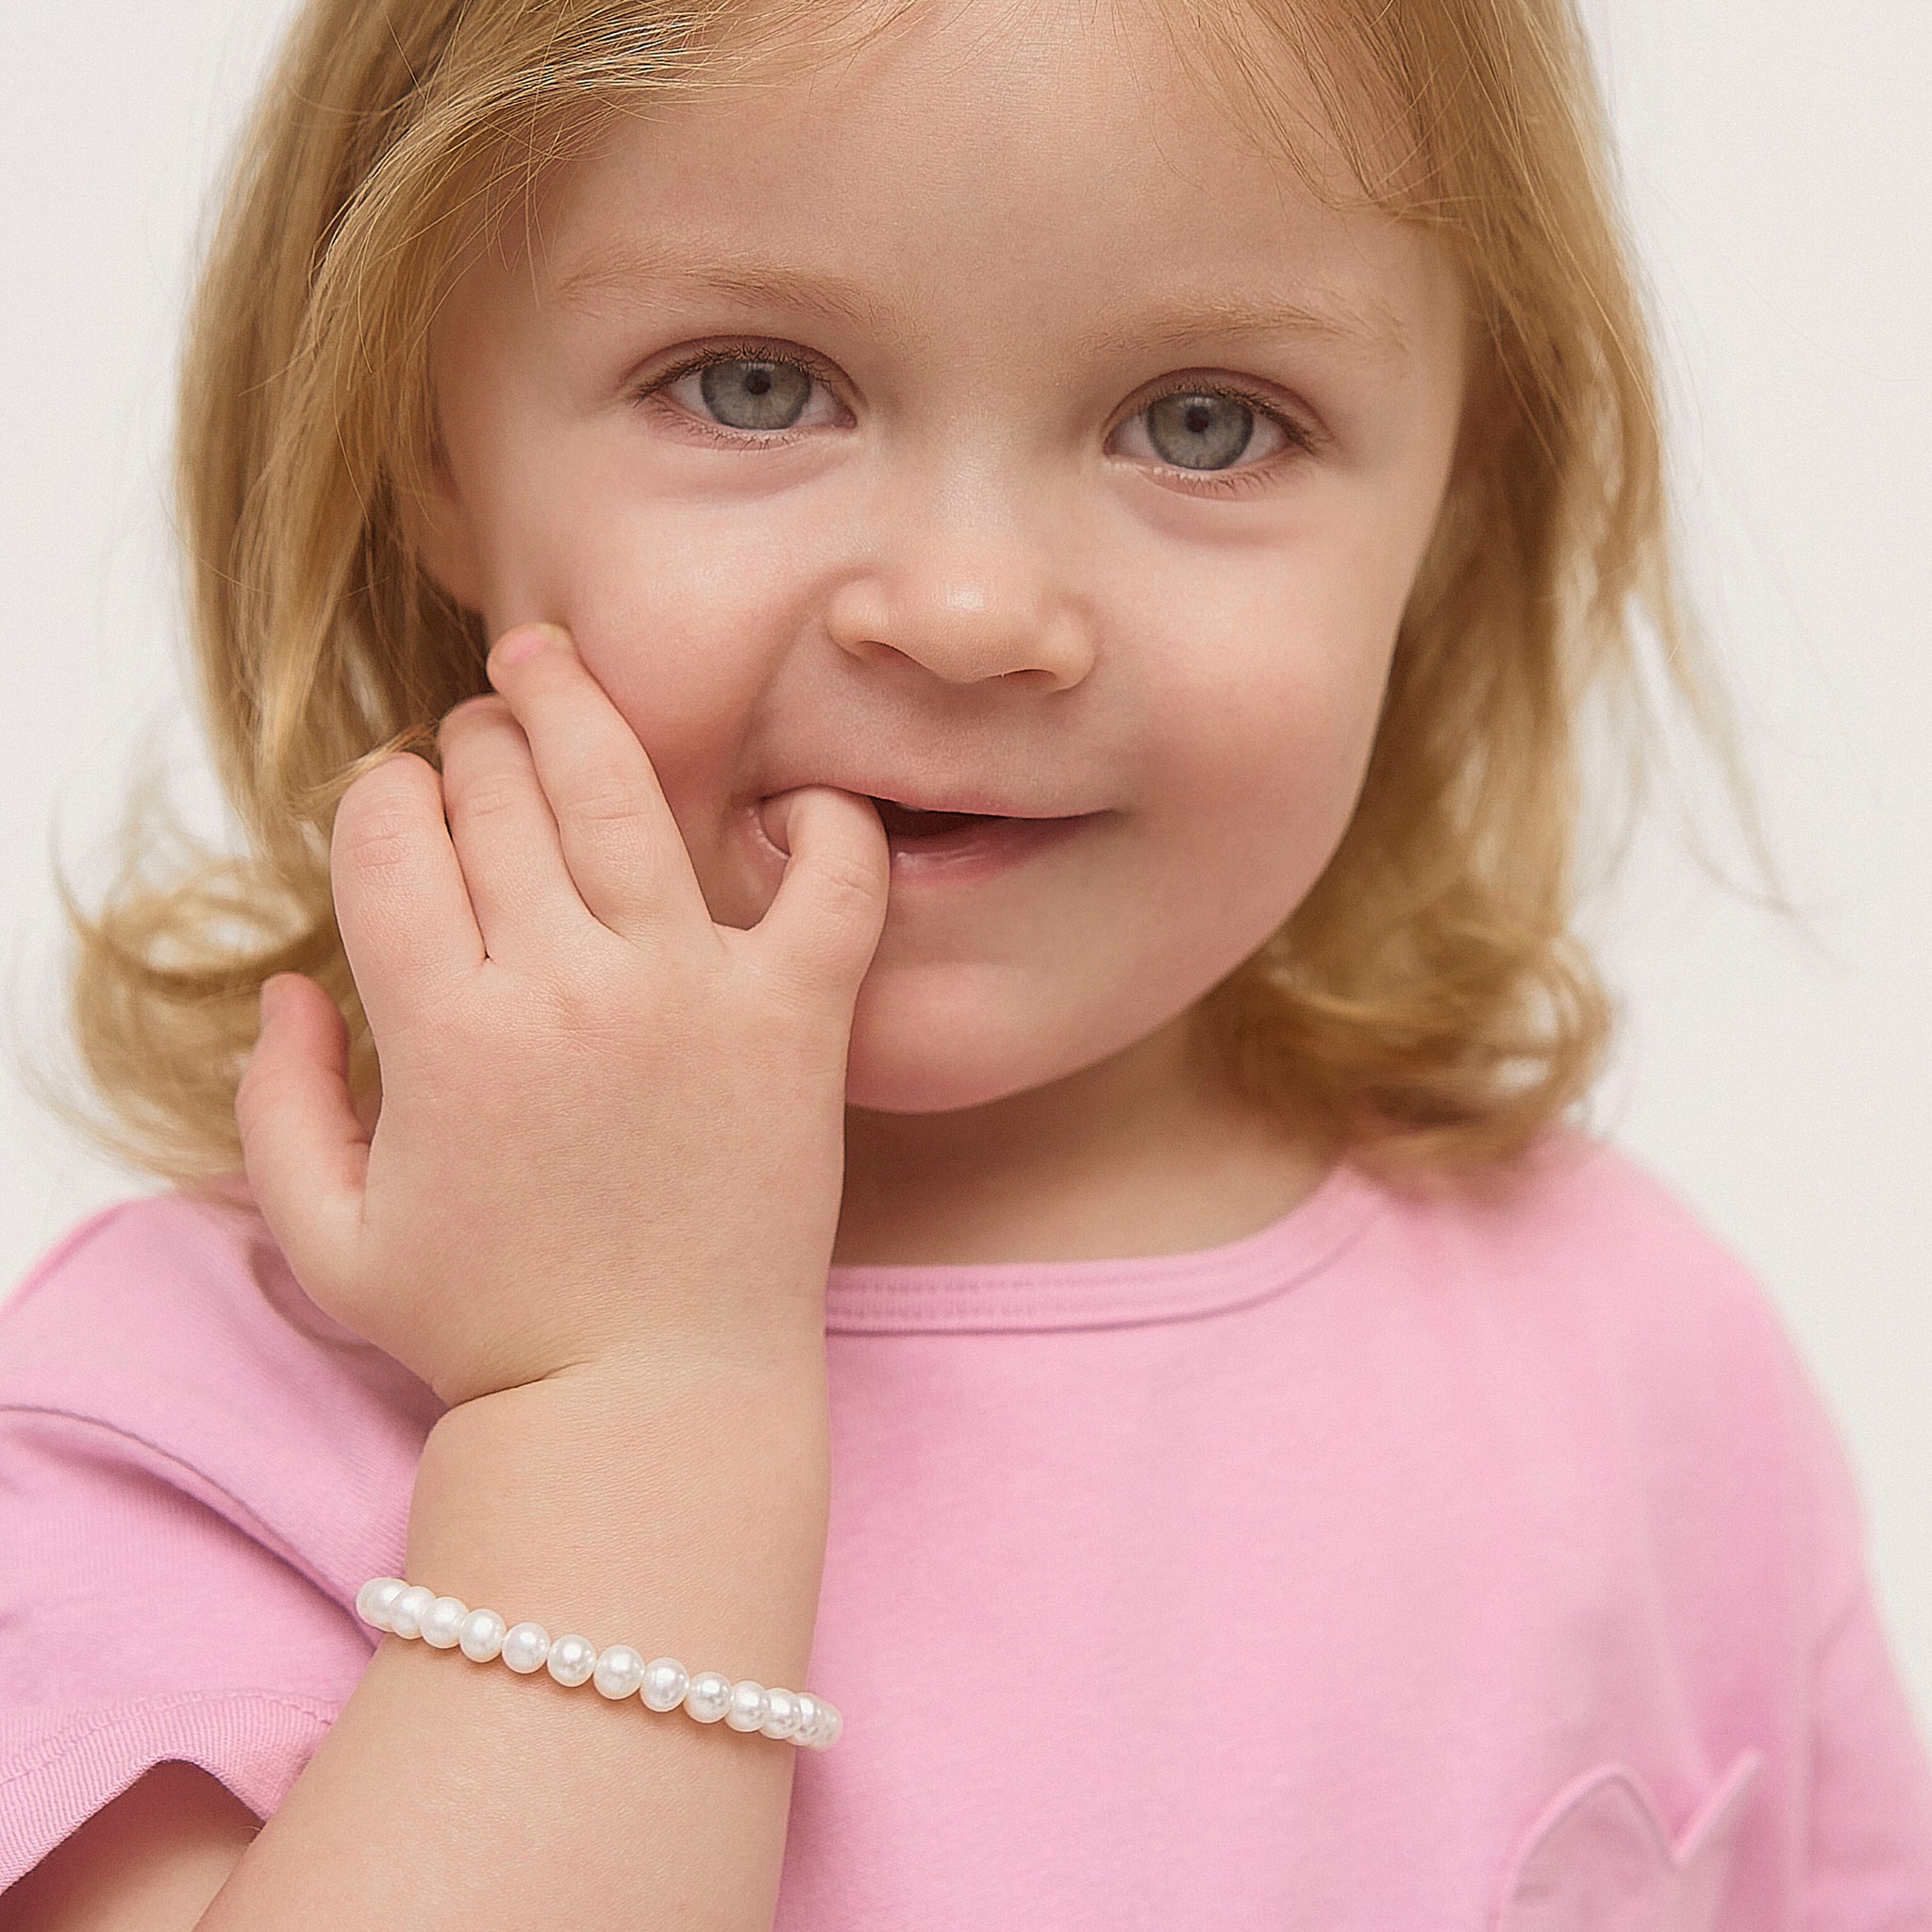 Children's Initial Bracelet | ChloBo Kids